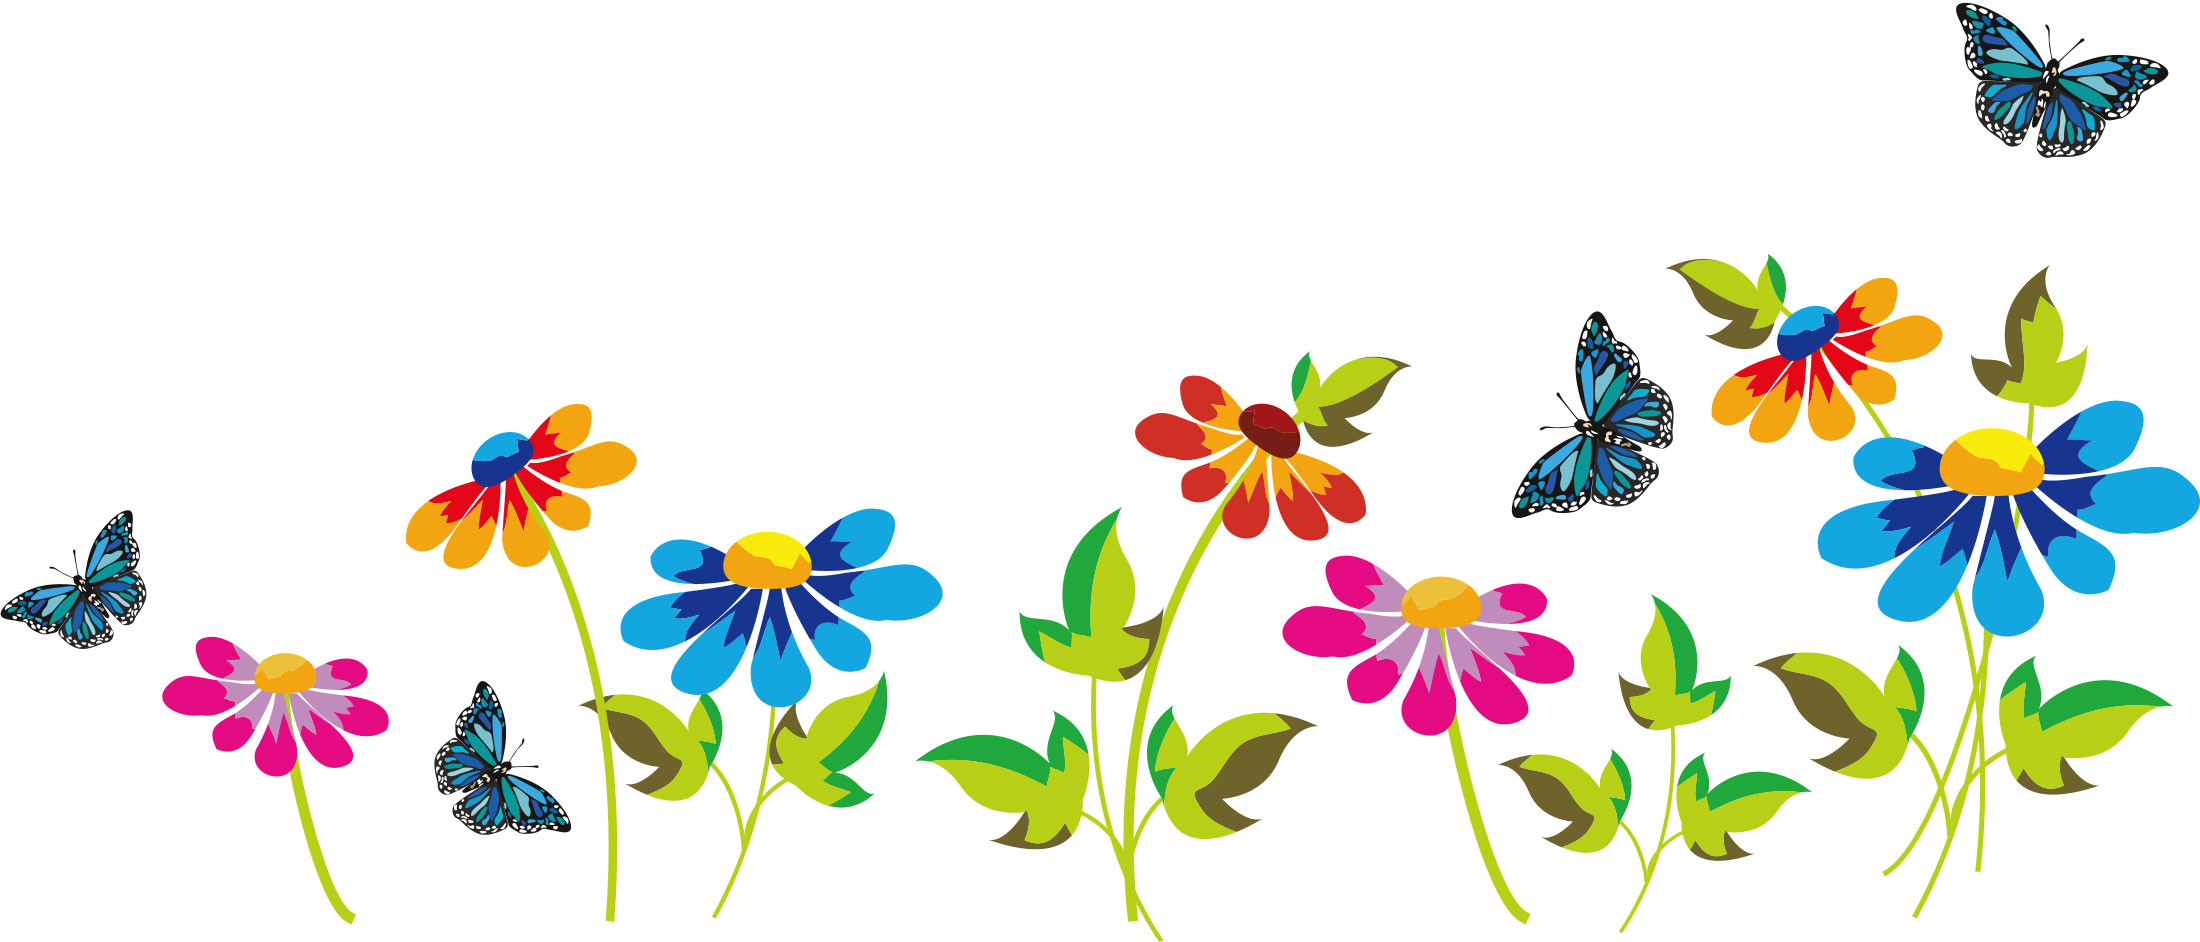 画像サンプル-ポップな花と蝶々